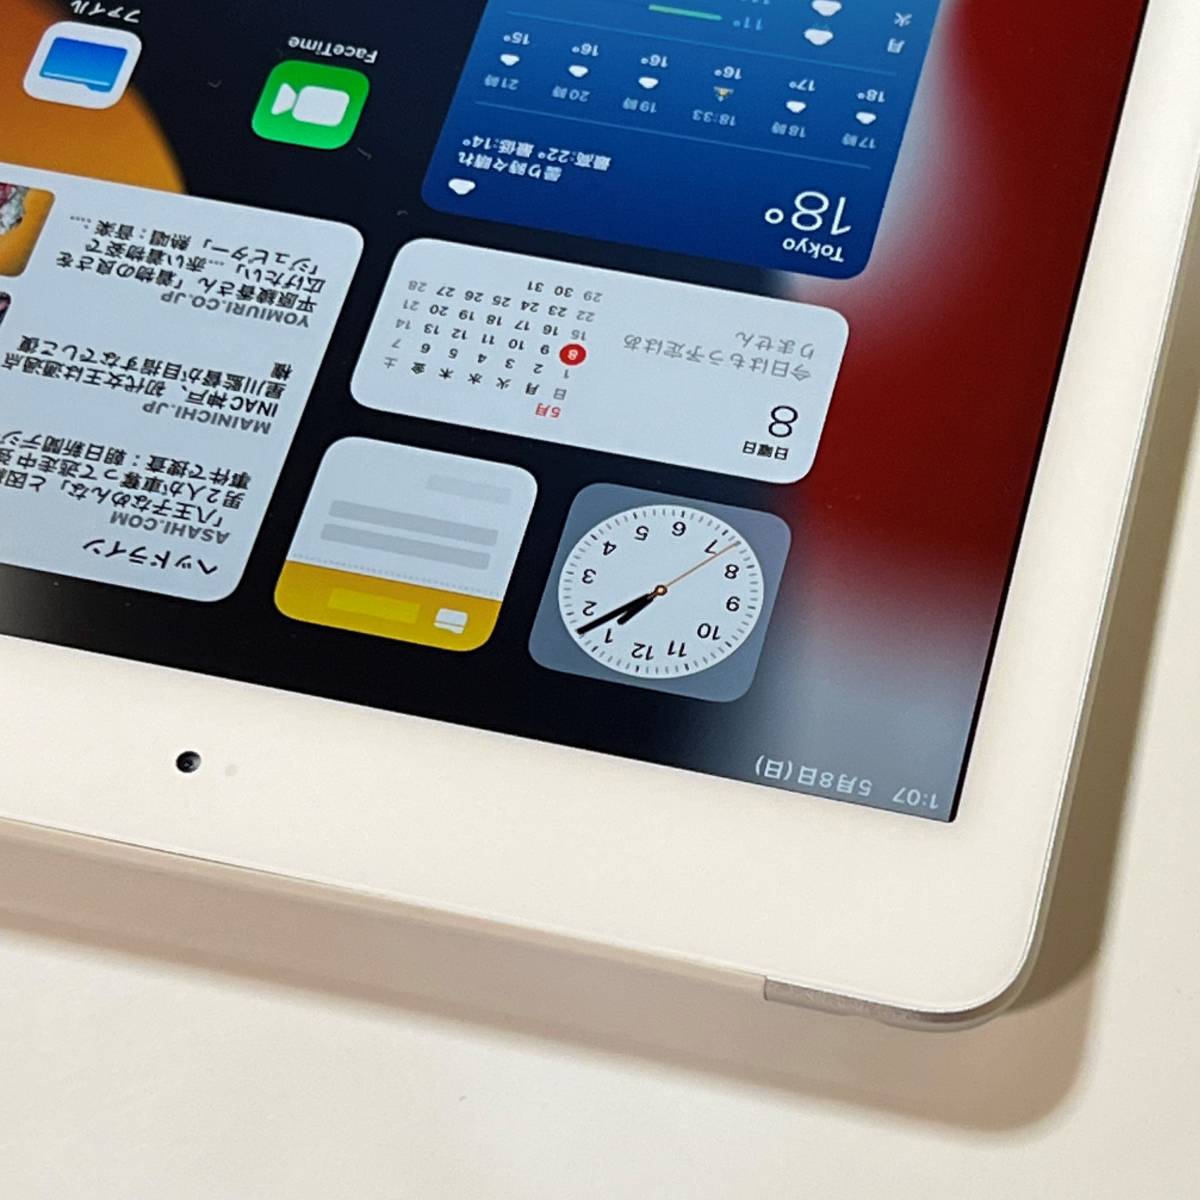 Apple SIMフリー iPad (第6世代) シルバー 32GB MR6P2J/A Wi-Fi+